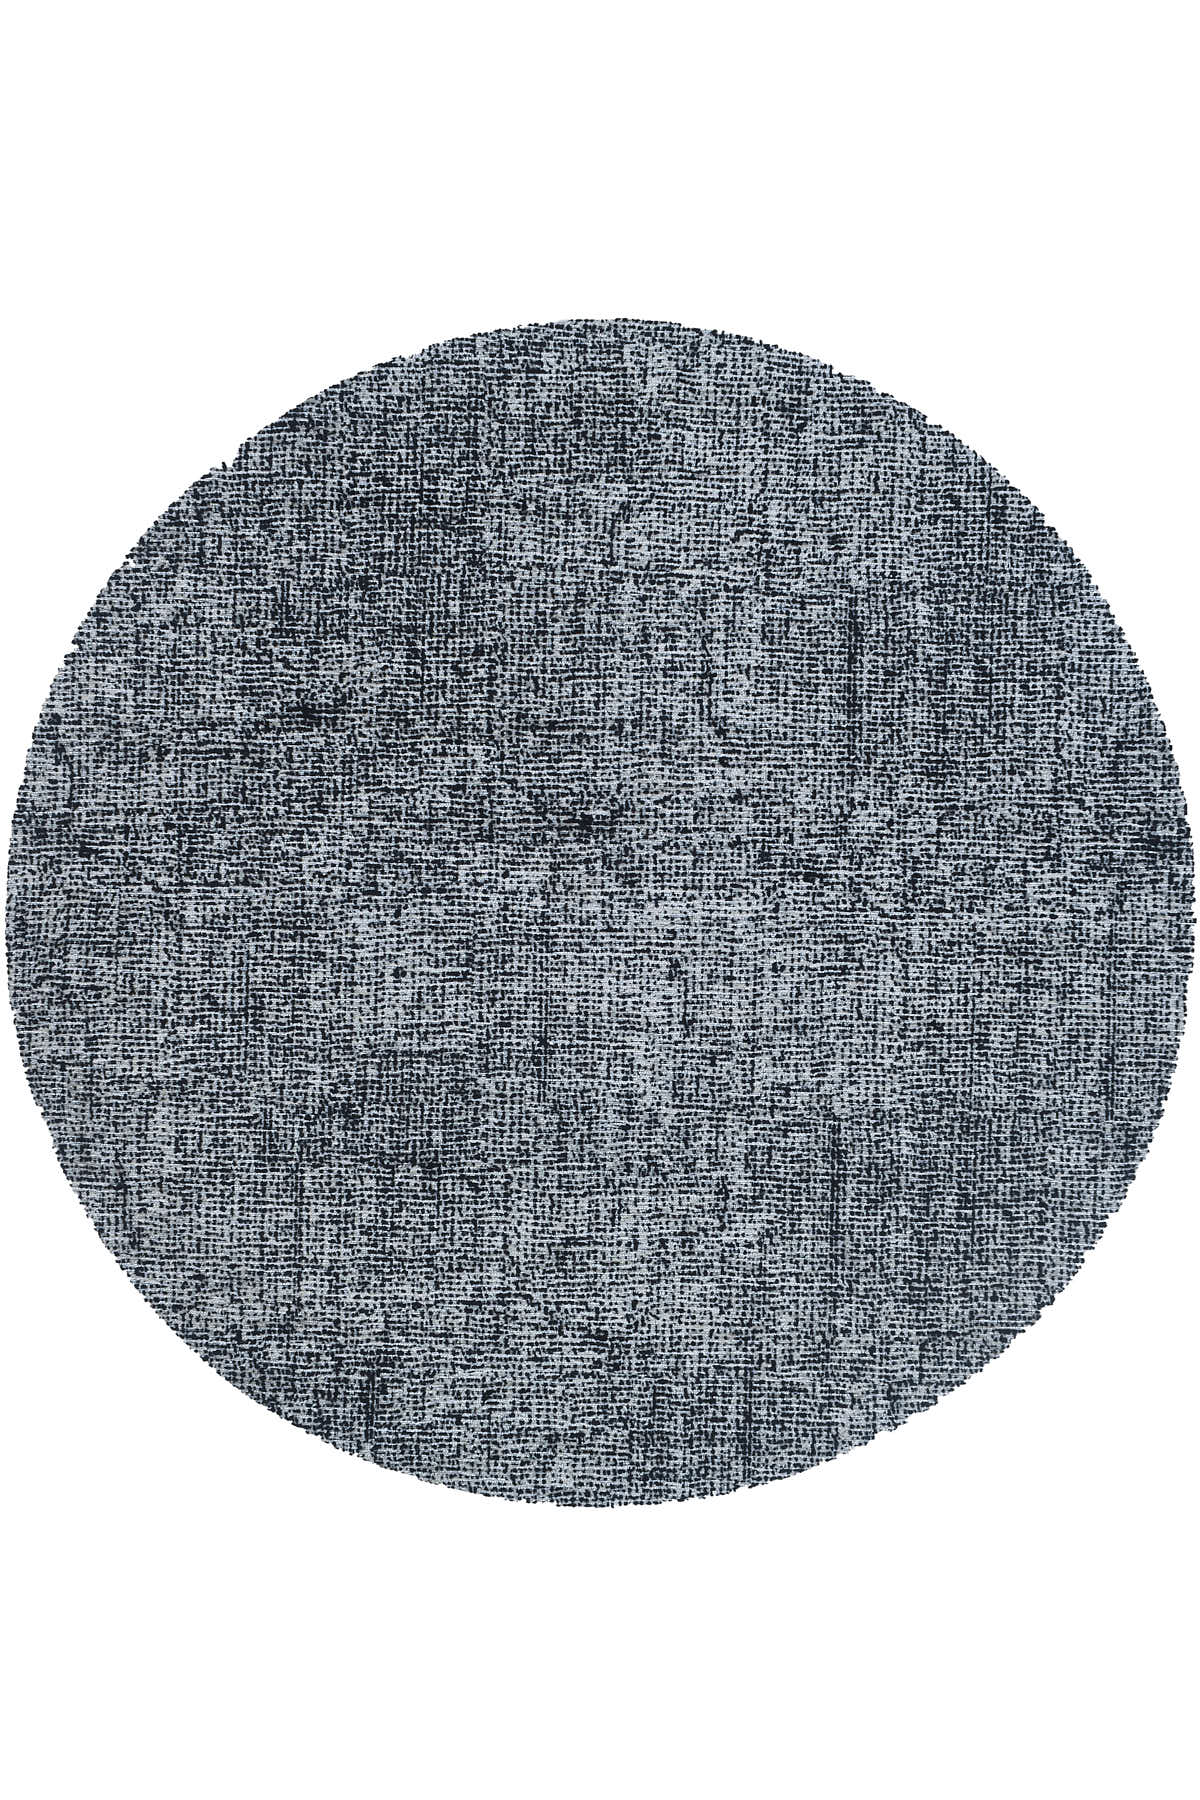 שטיח מנילה LEZA עגול שחור לבן